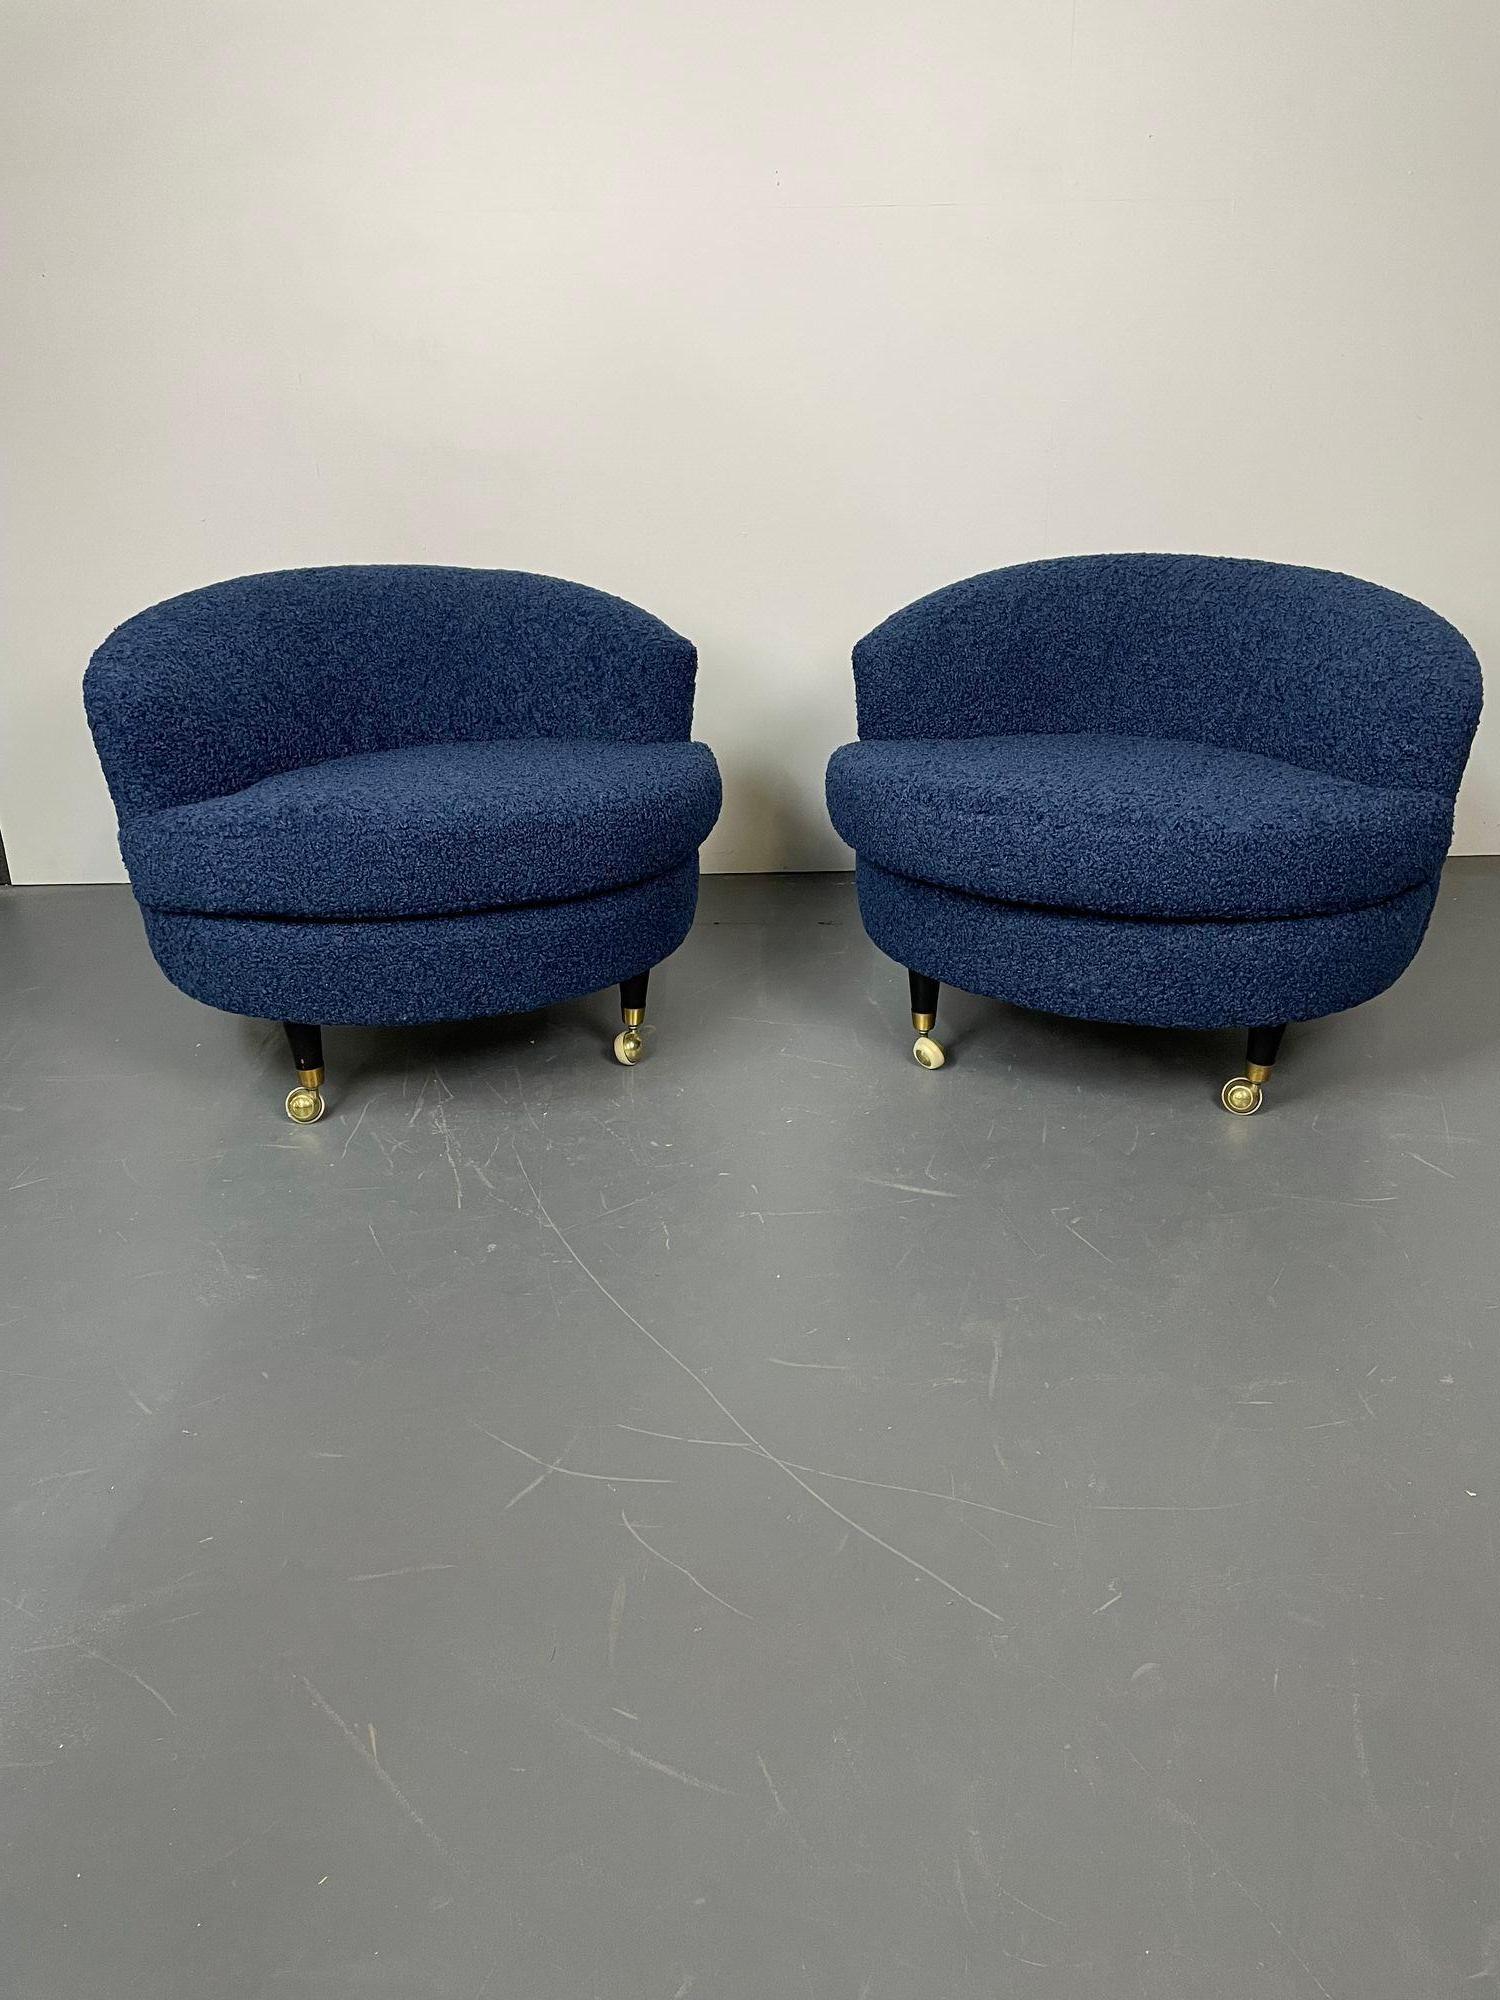 Paire de chaises de salon pivotantes / pantoufles, style Baughman, du milieu du siècle dernier.
Paire de fauteuils pivotants à profil bas, aux pieds en ébène, reposant sur des roues. Nouvellement rembourré dans un tissu bleu amusant et luxueux en